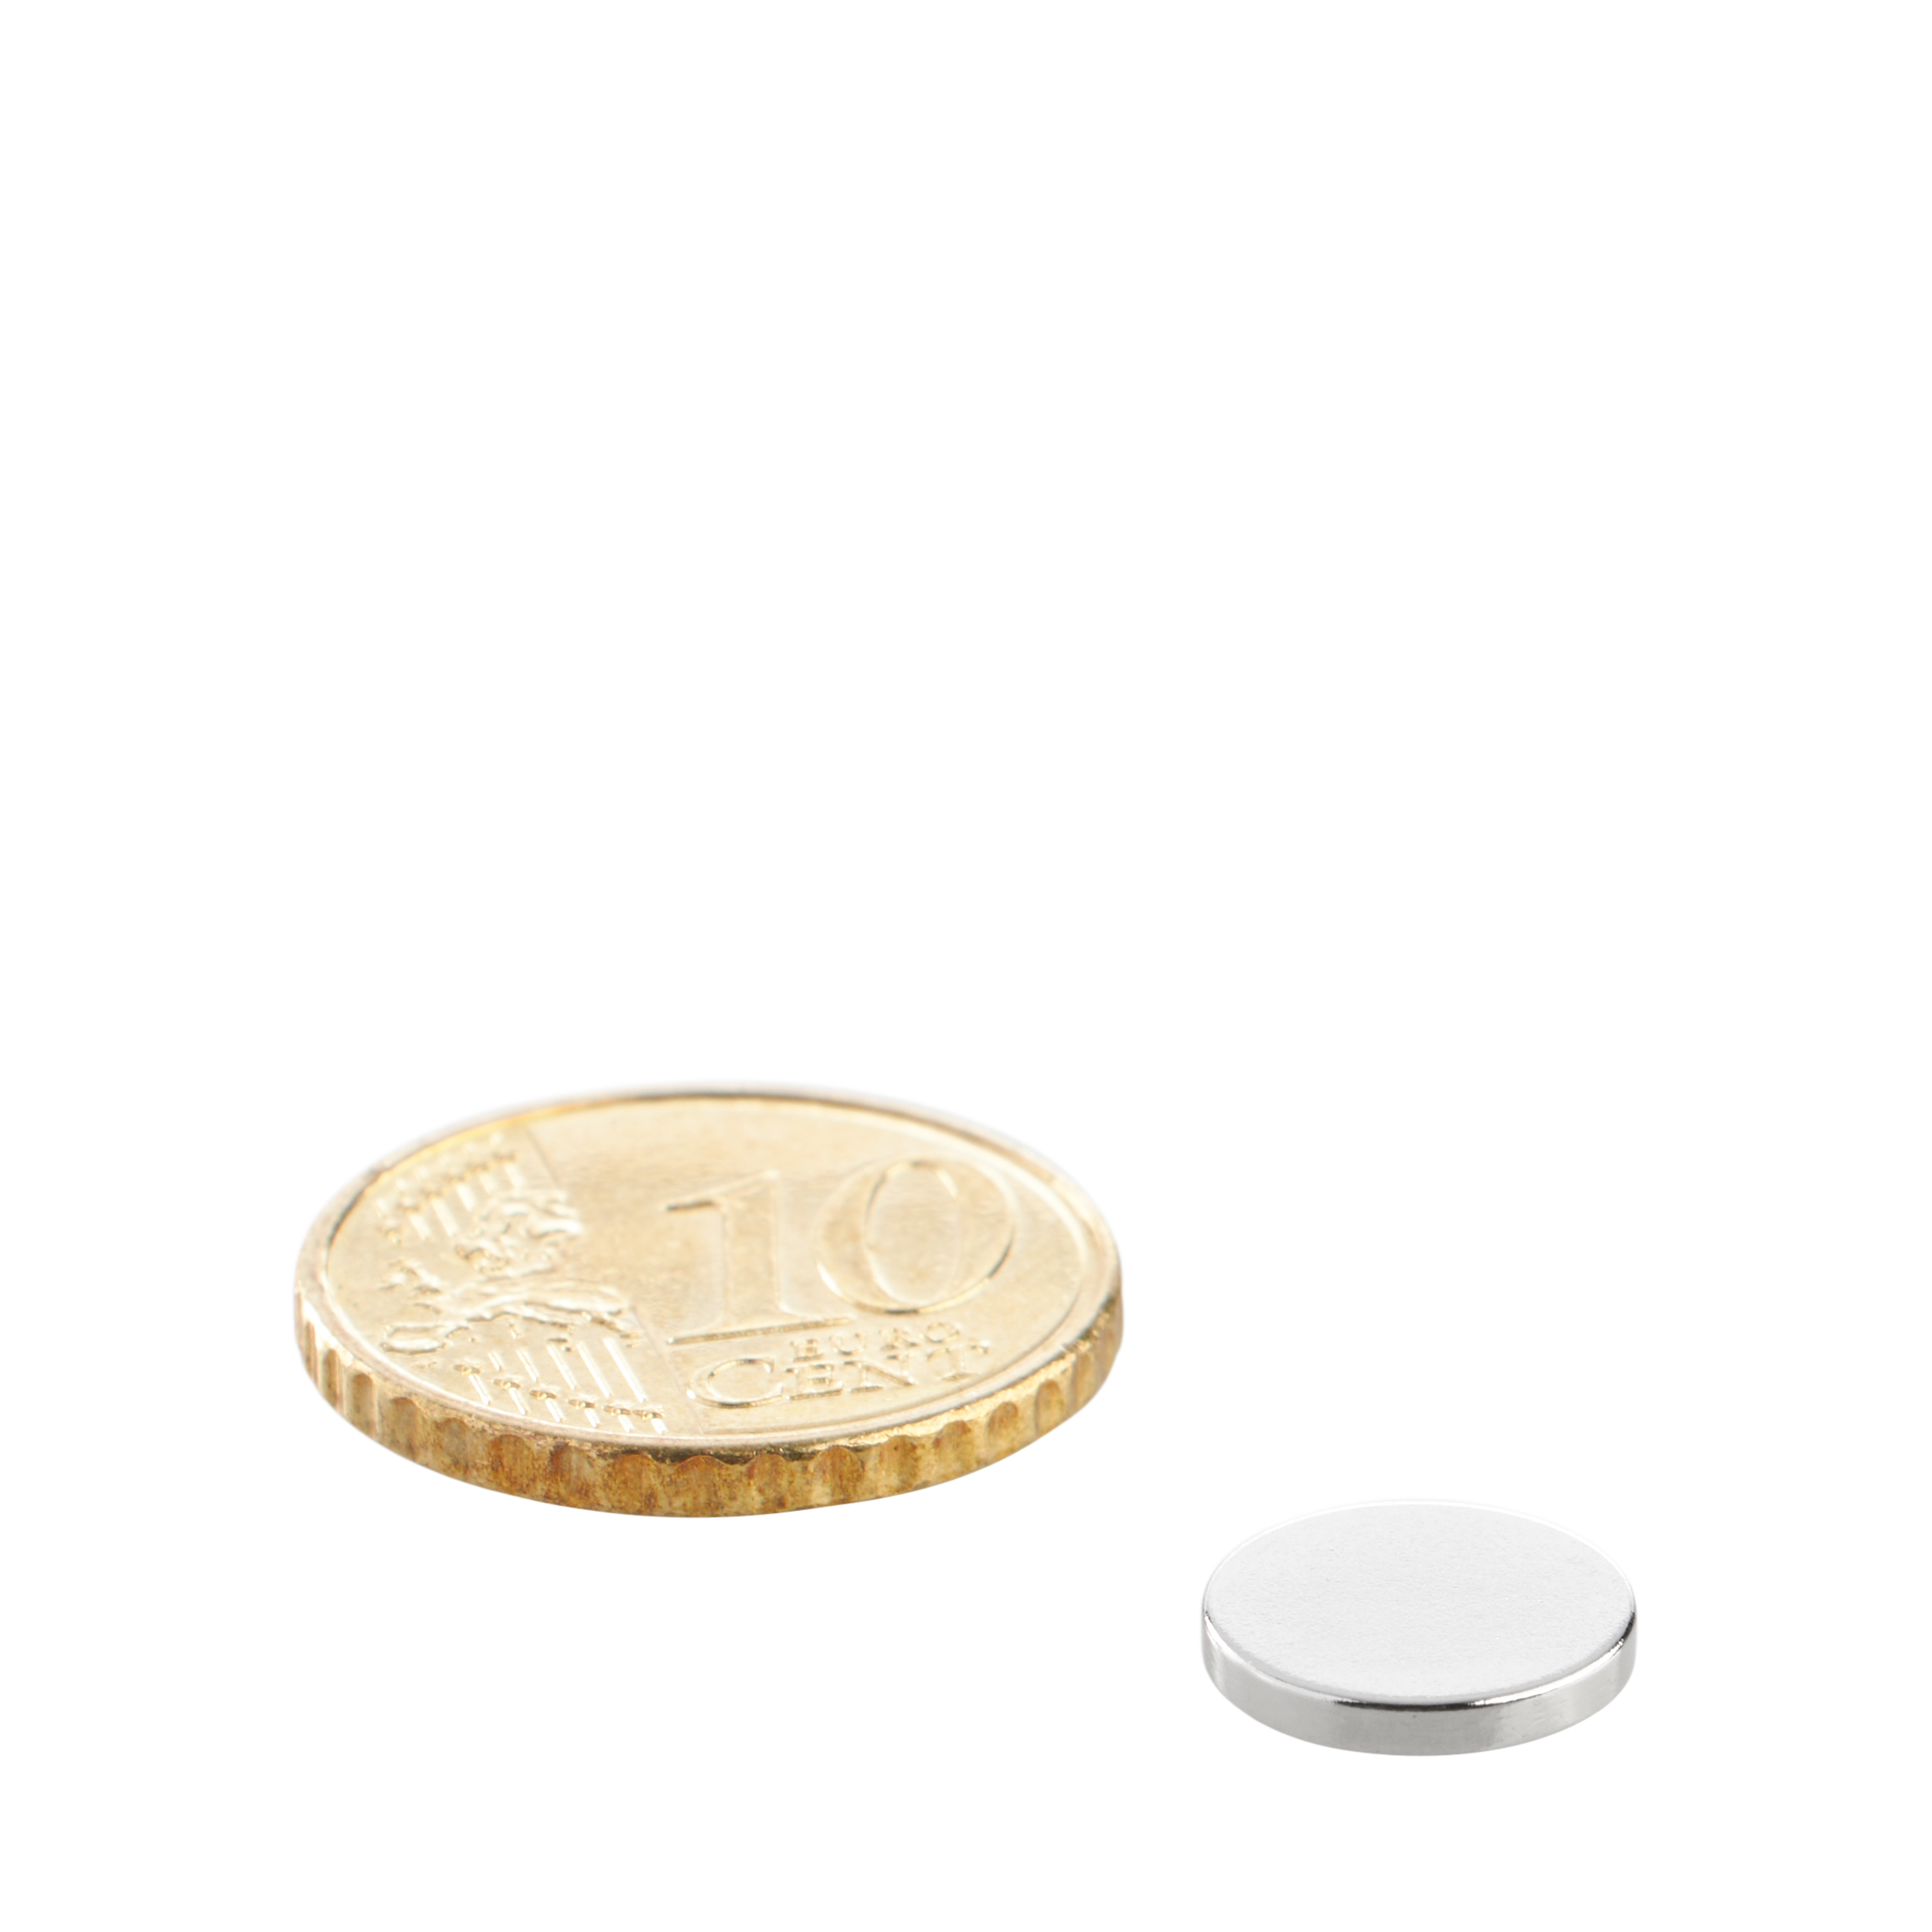 Aimant néodyme en forme de pastille, 12 mm, argent sur